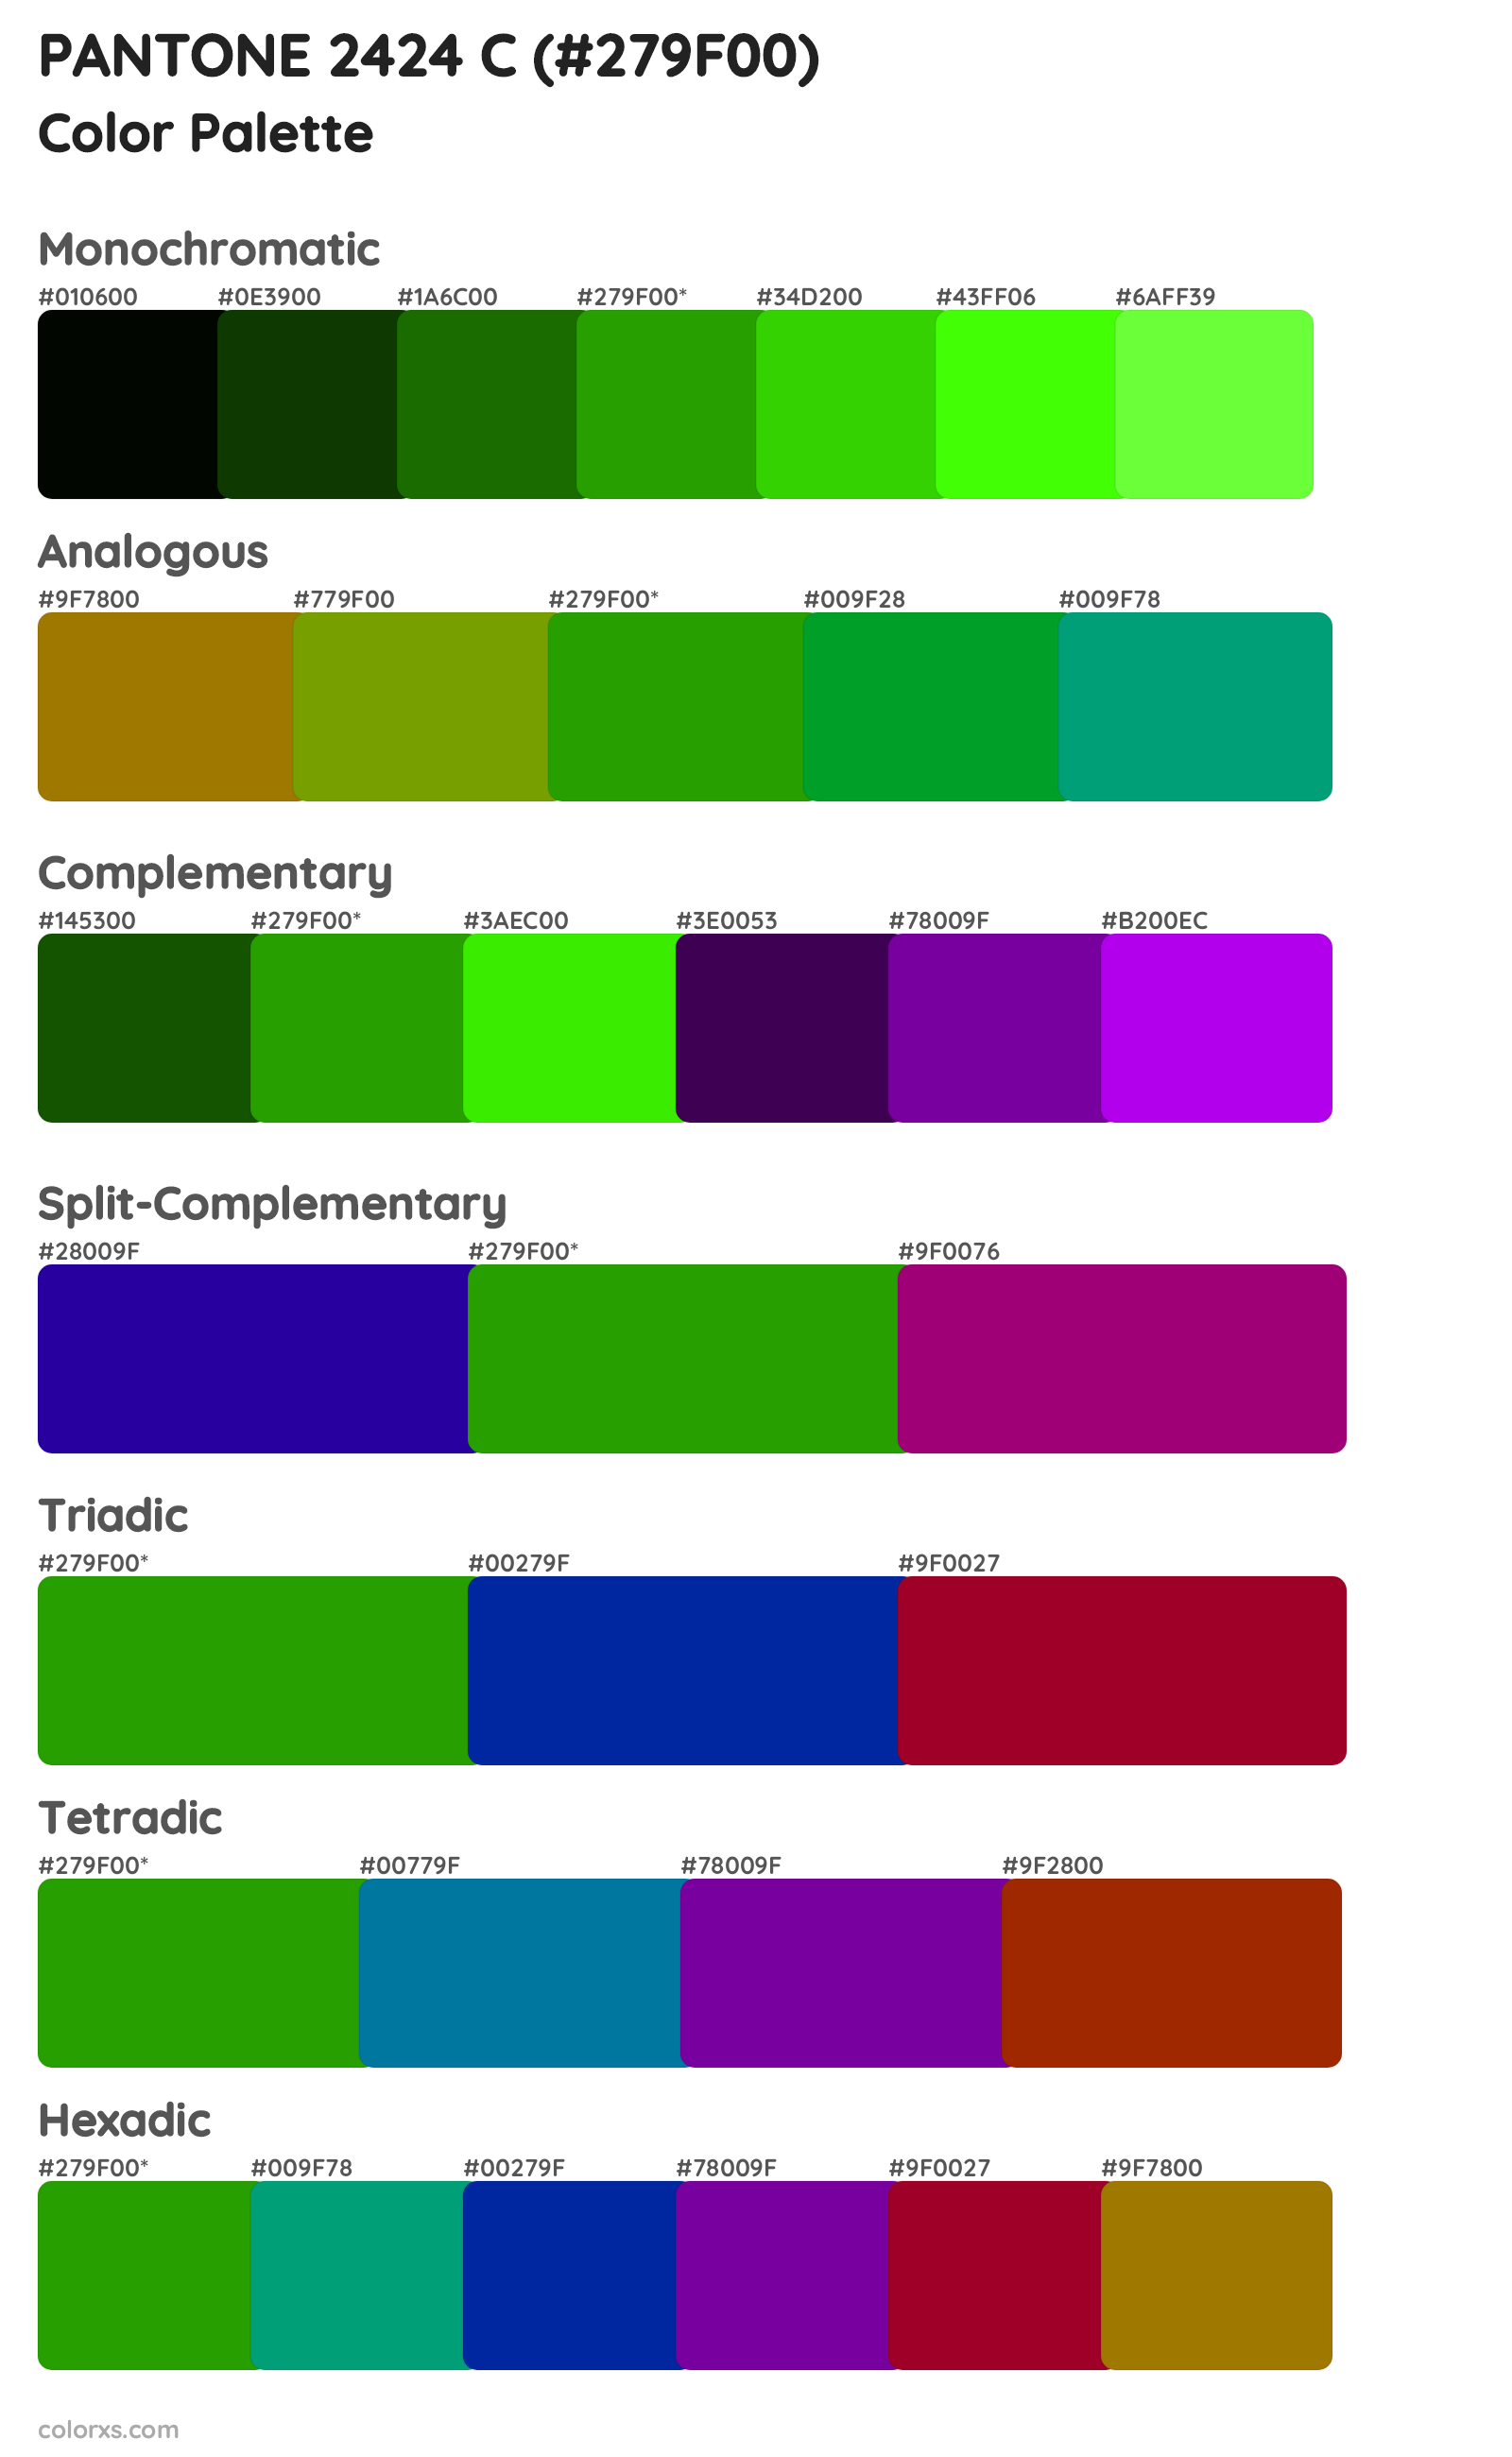 PANTONE 2424 C Color Scheme Palettes